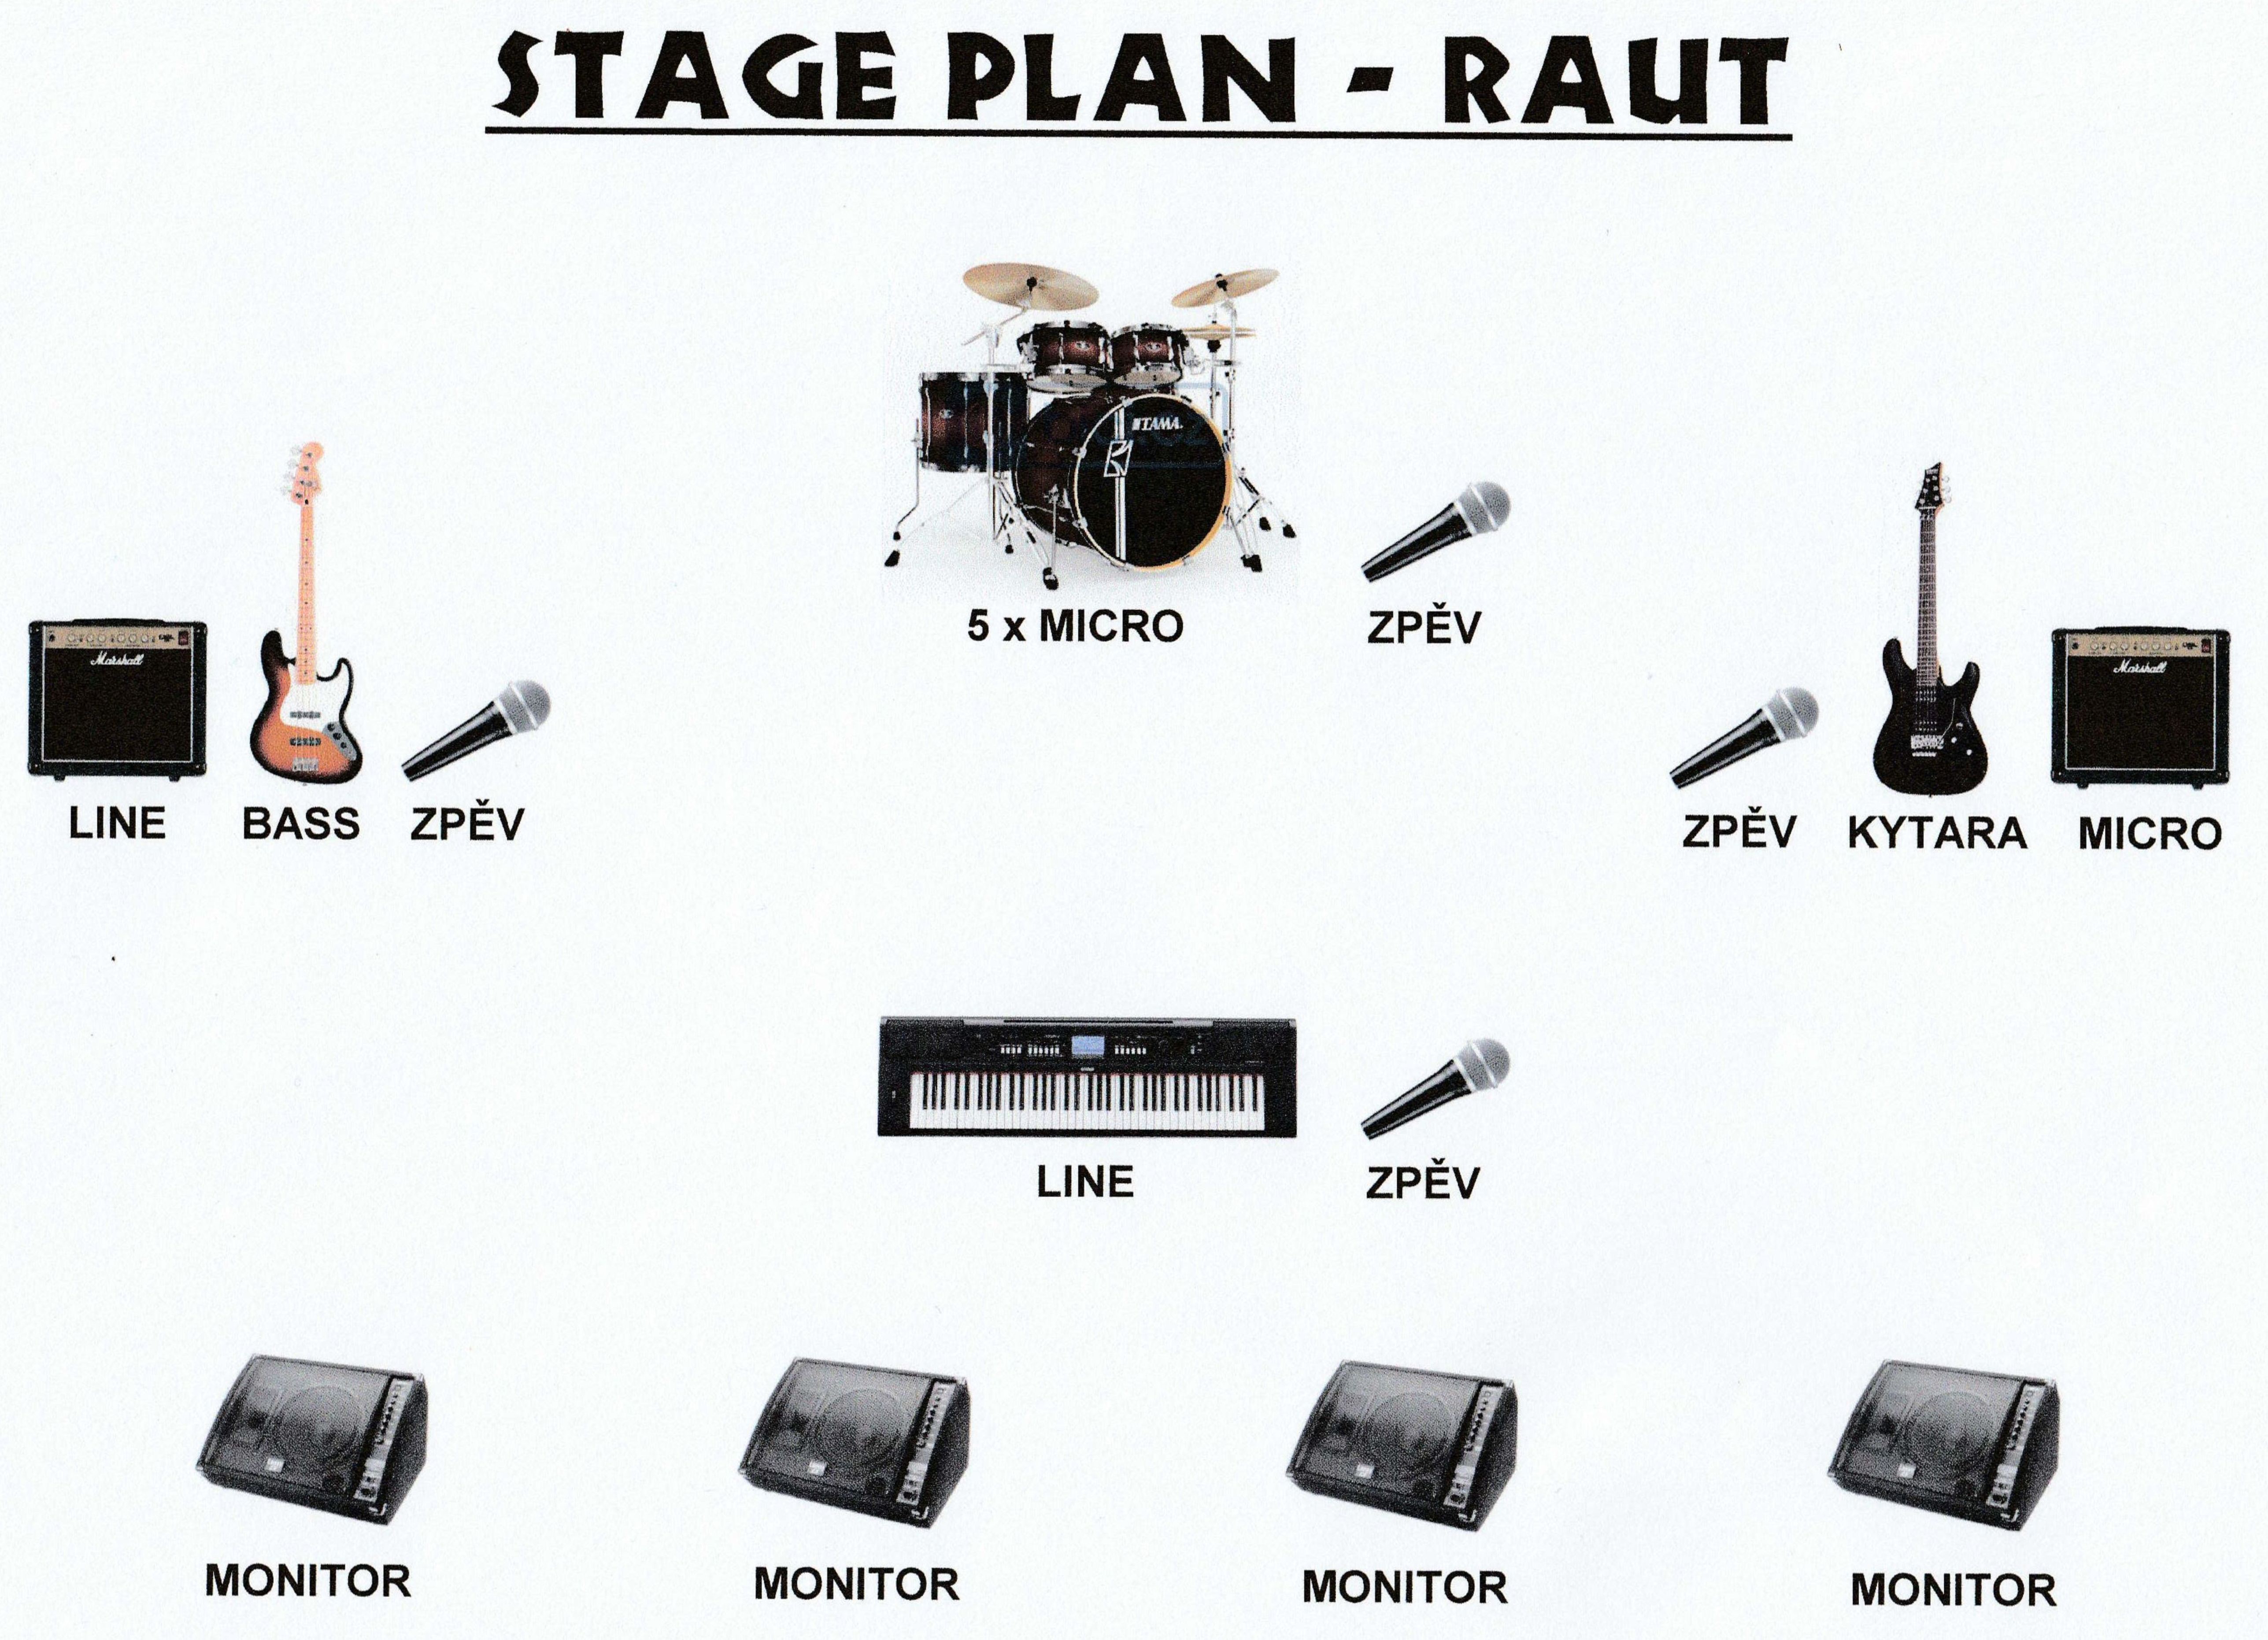 kopie---stage-plan-jpeg.jpg